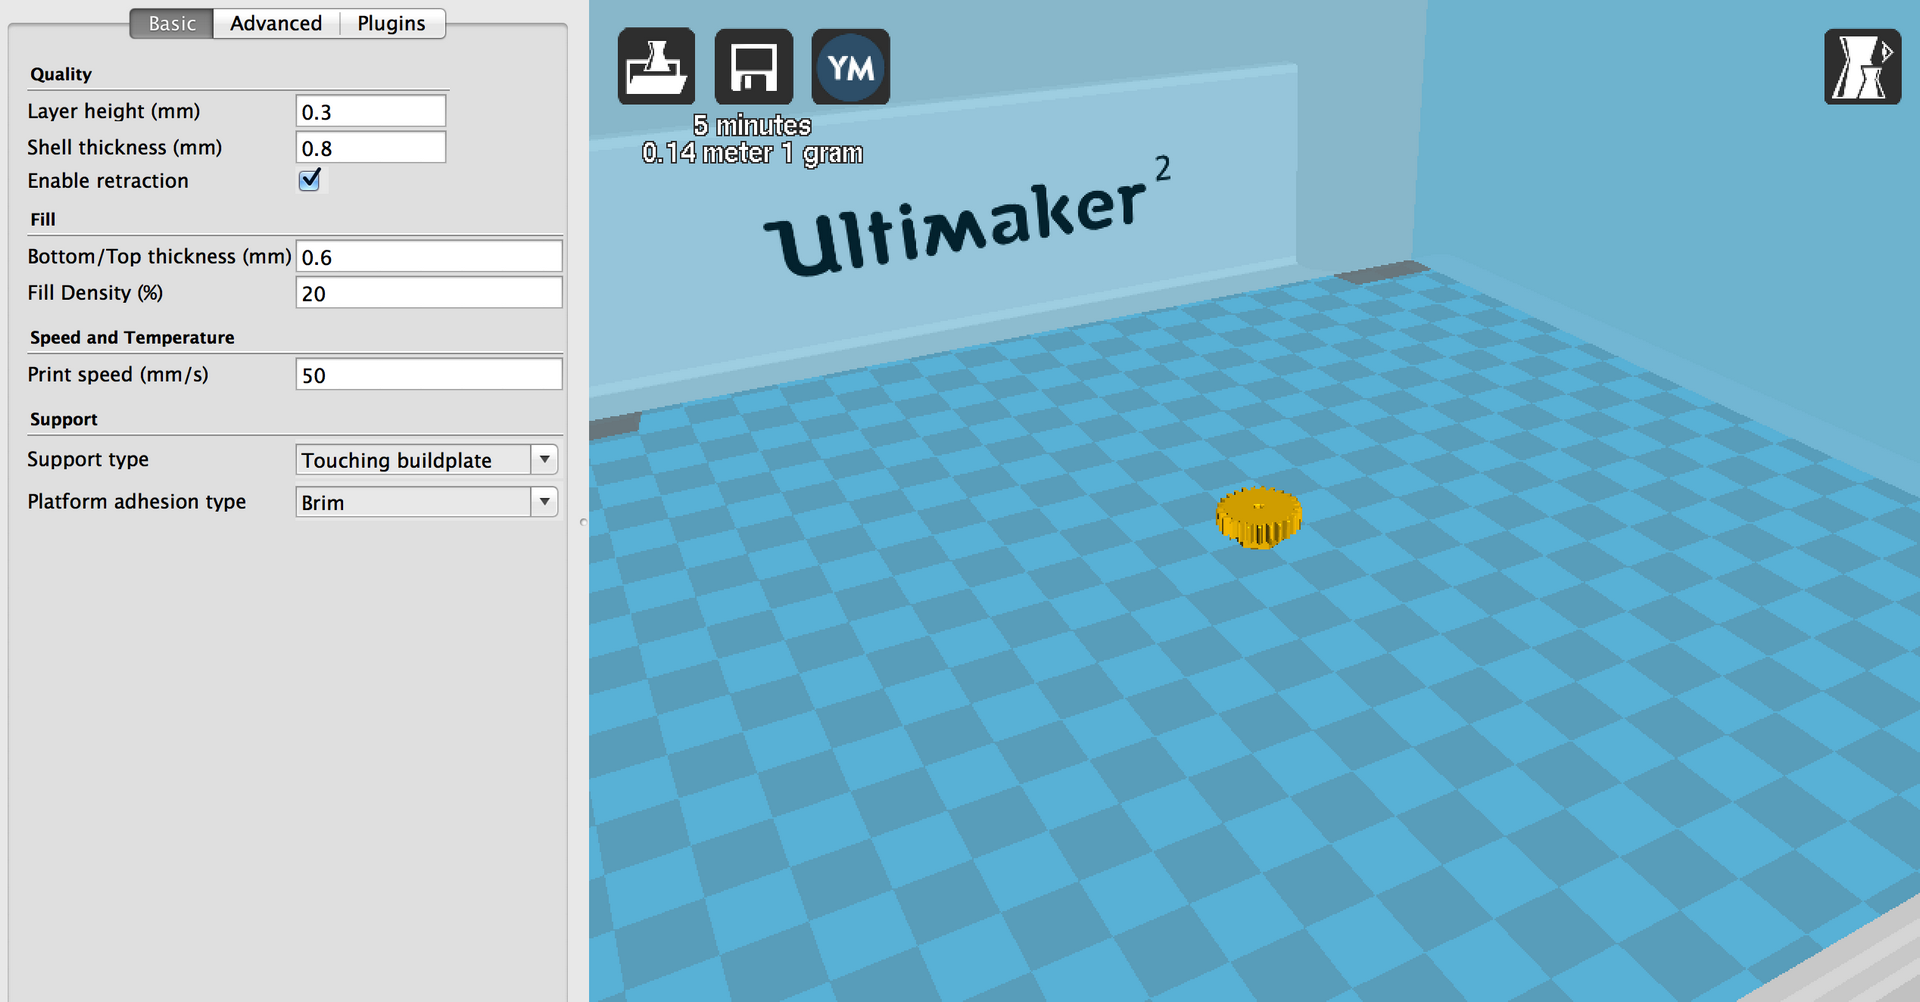 Фото 3D принтер Ultimaker 2 Go